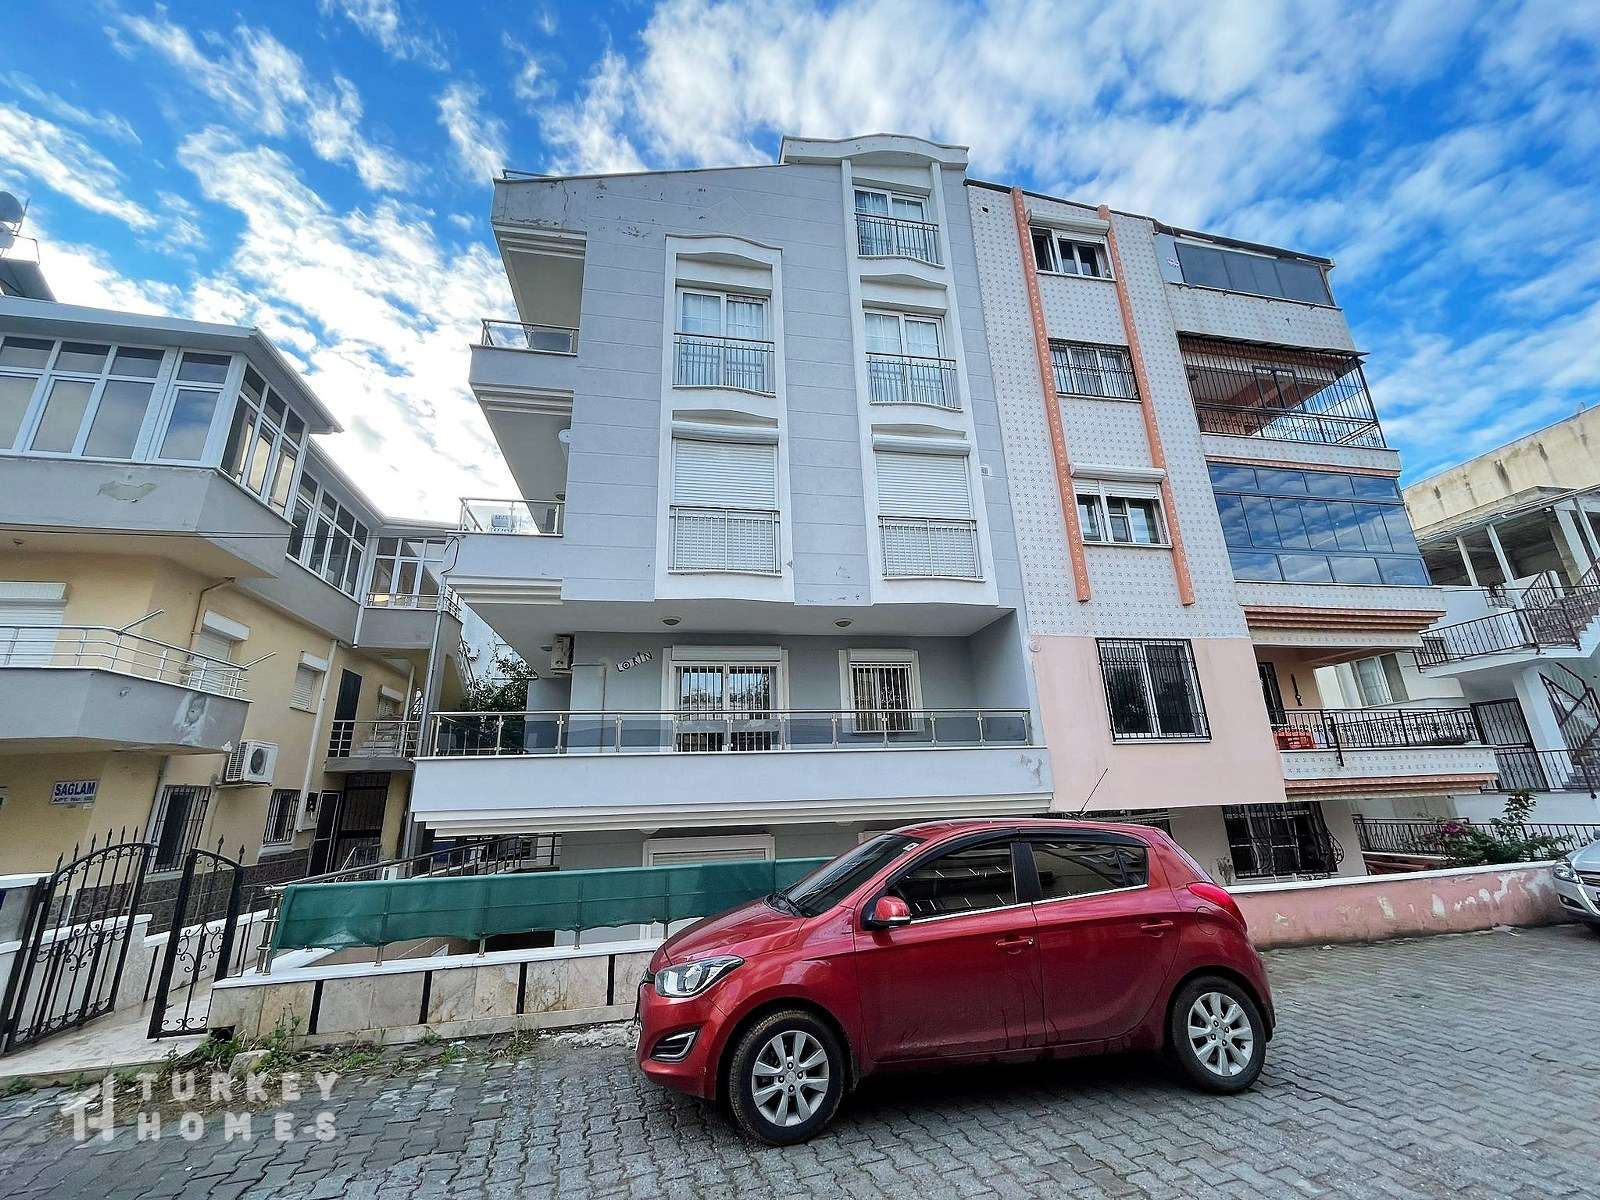 Ground Duplex Didim Apartment- Residential Block